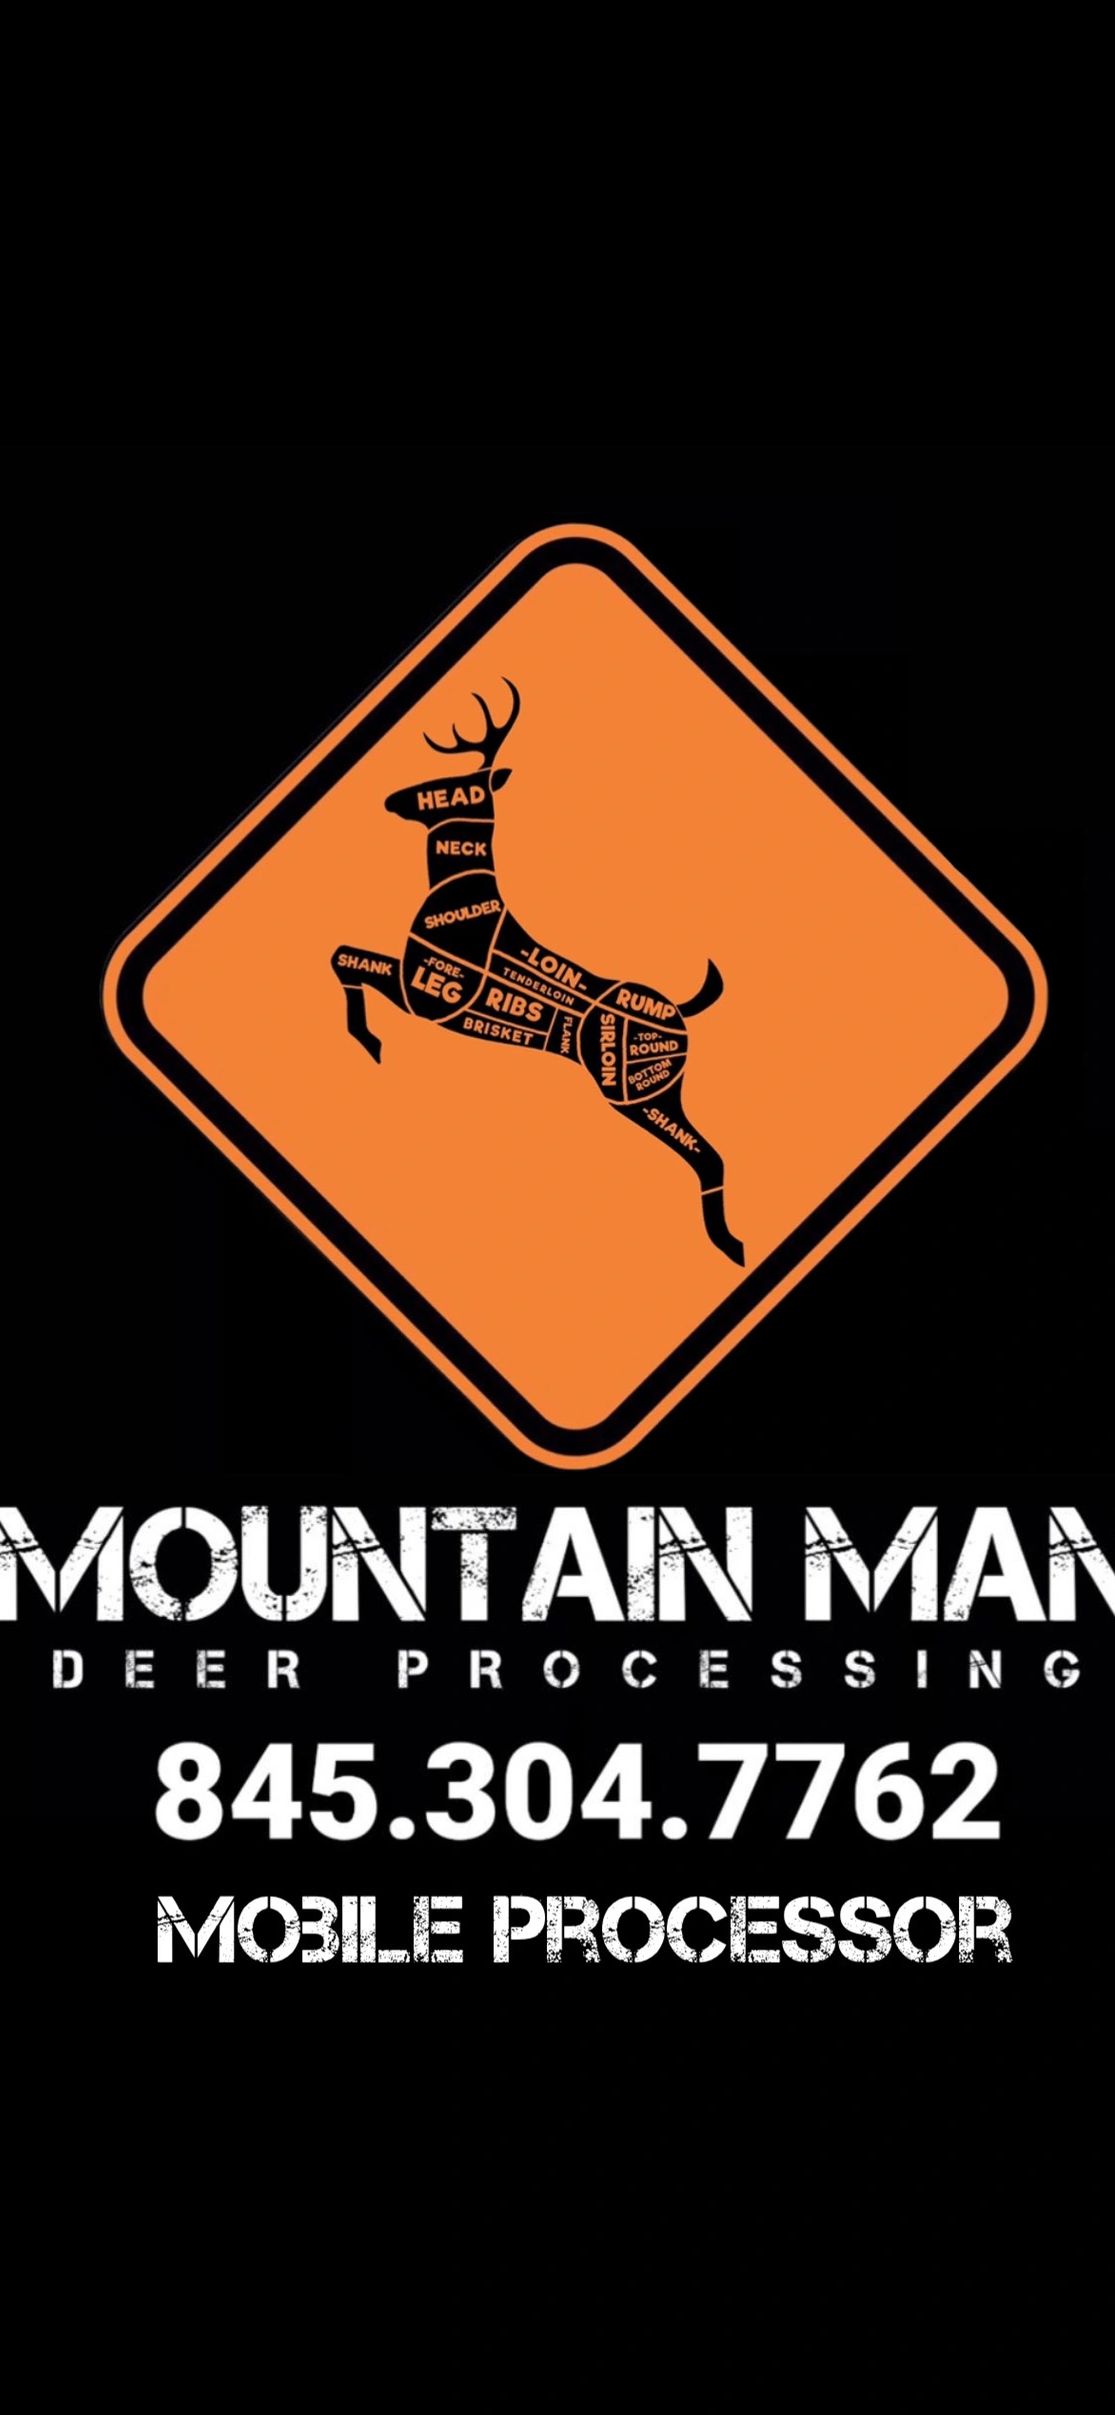 DIY (Do It Yourself) Deer Processing